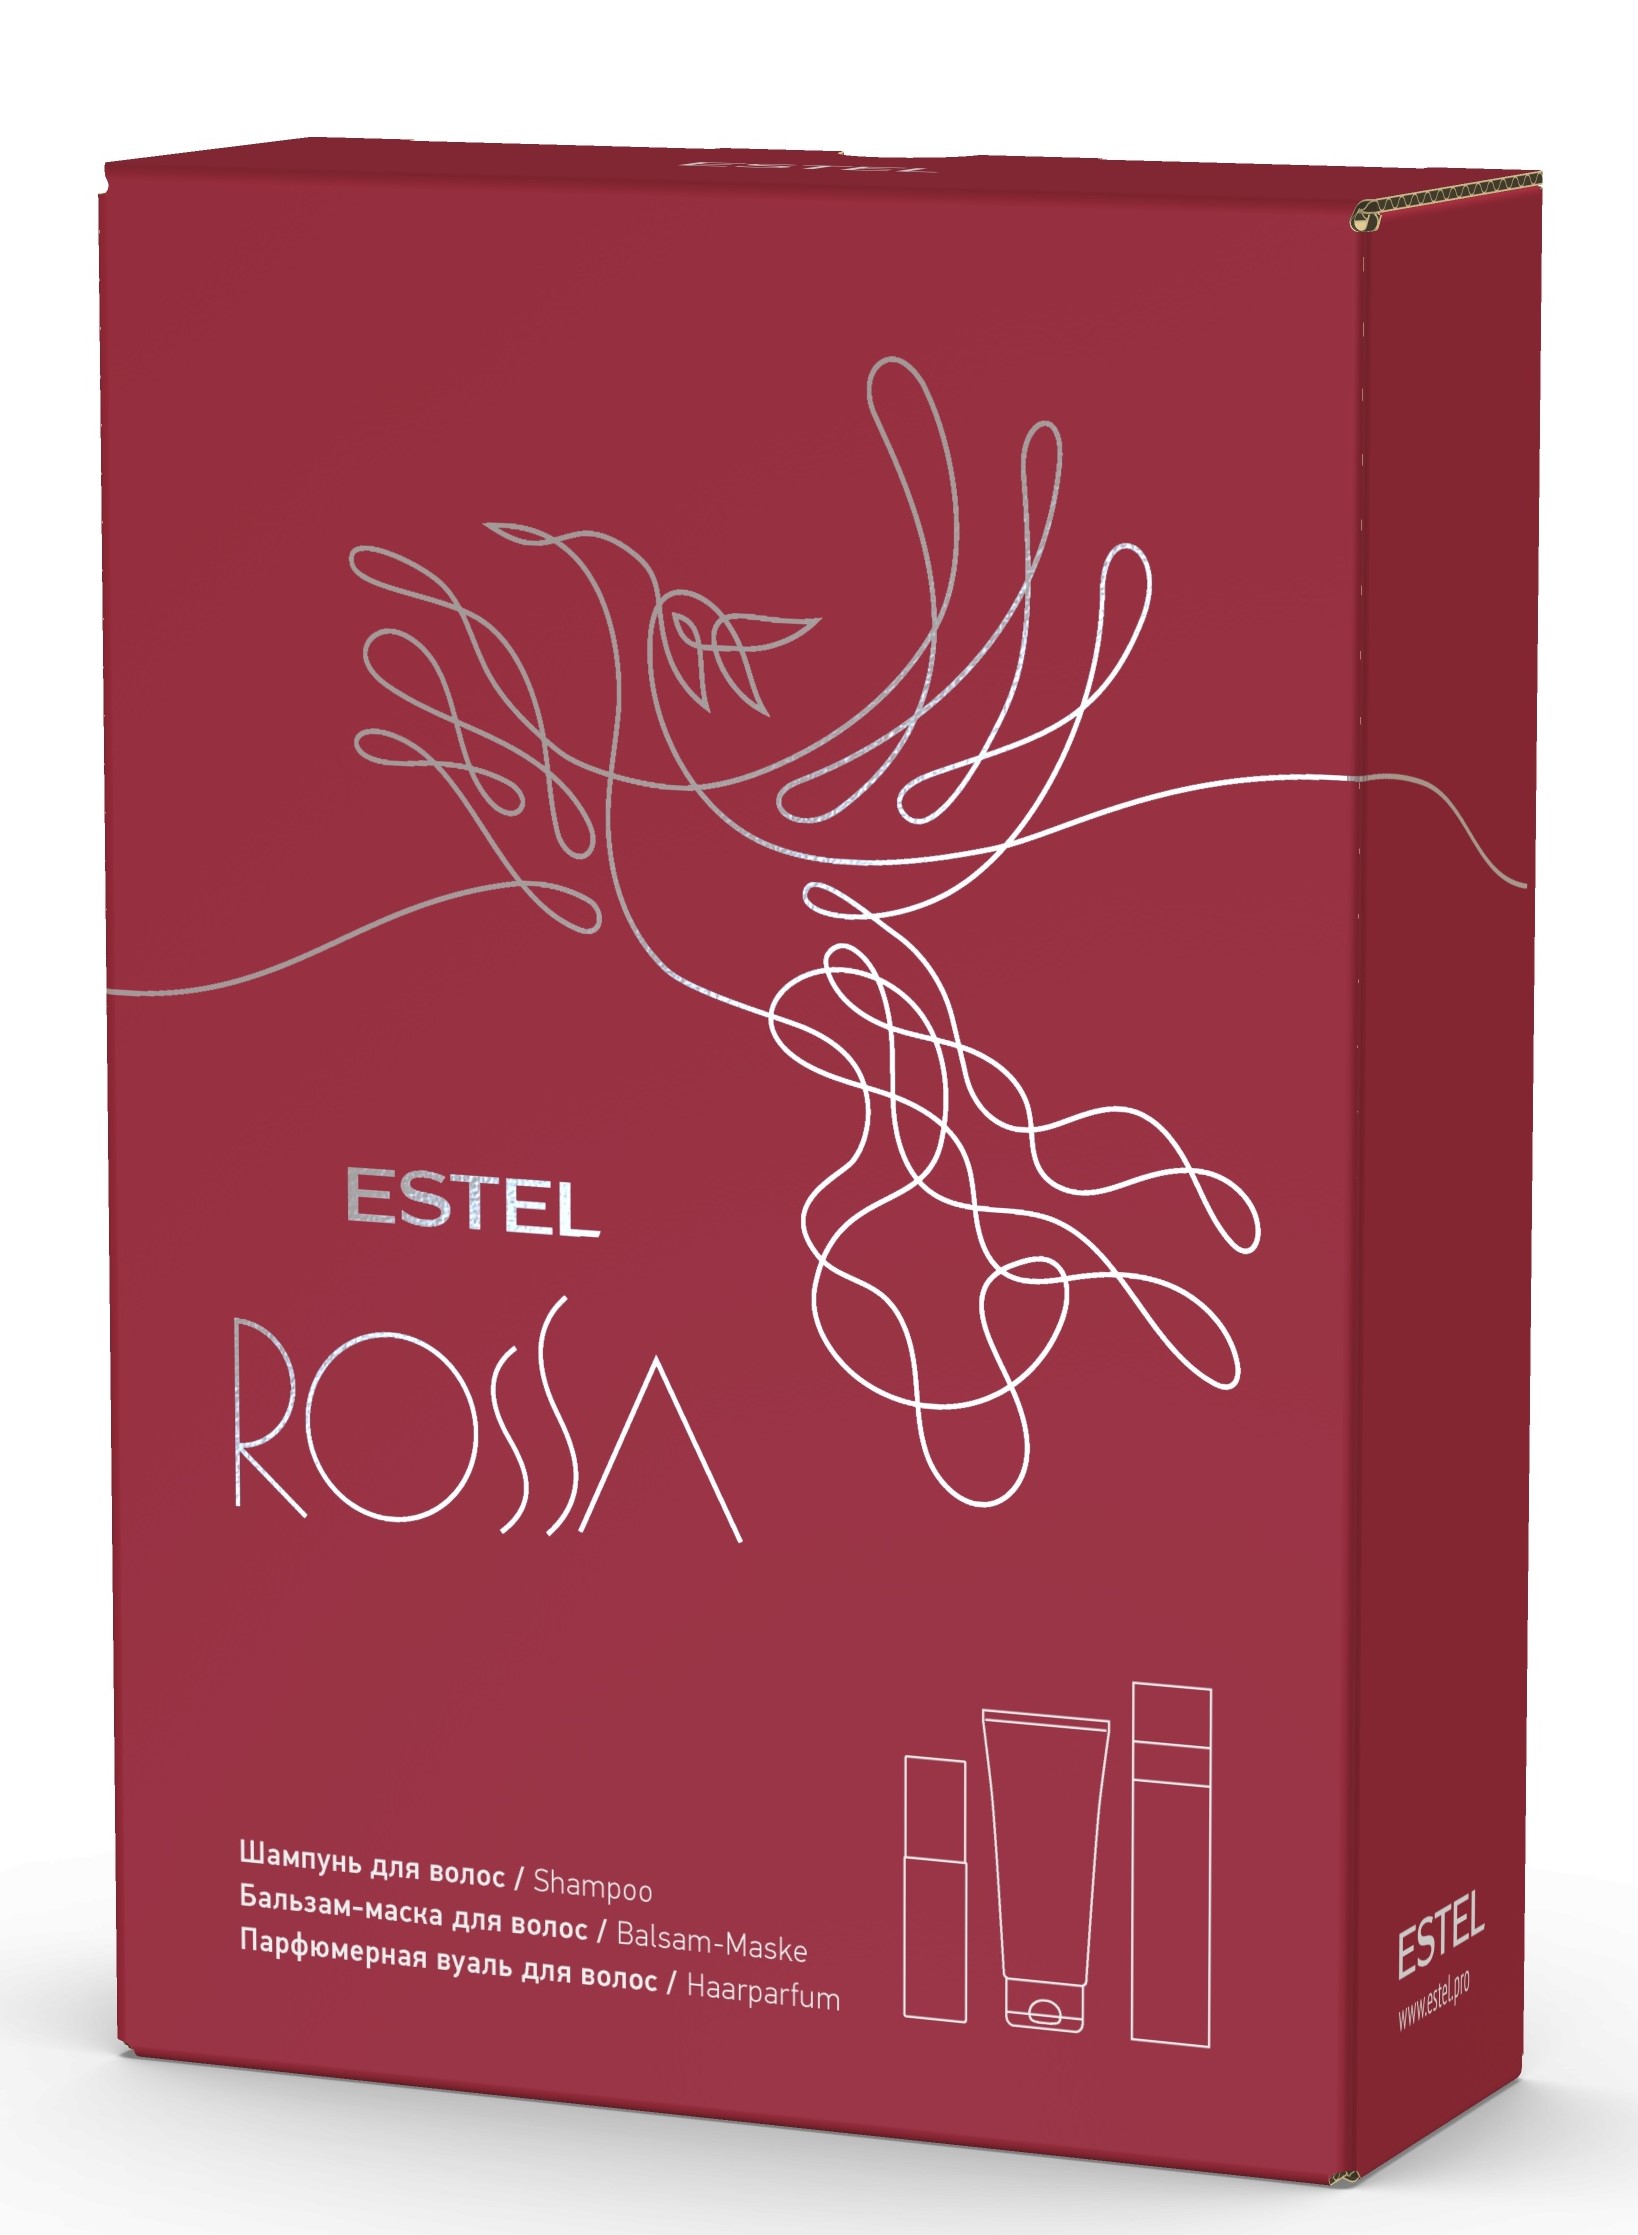 Эстель Подарочный набор Rossa: шампунь 250 мл + бальзам-маска 200 мл + парфюмерная вуаль 100 мл (Estel, Rossa) фото 0